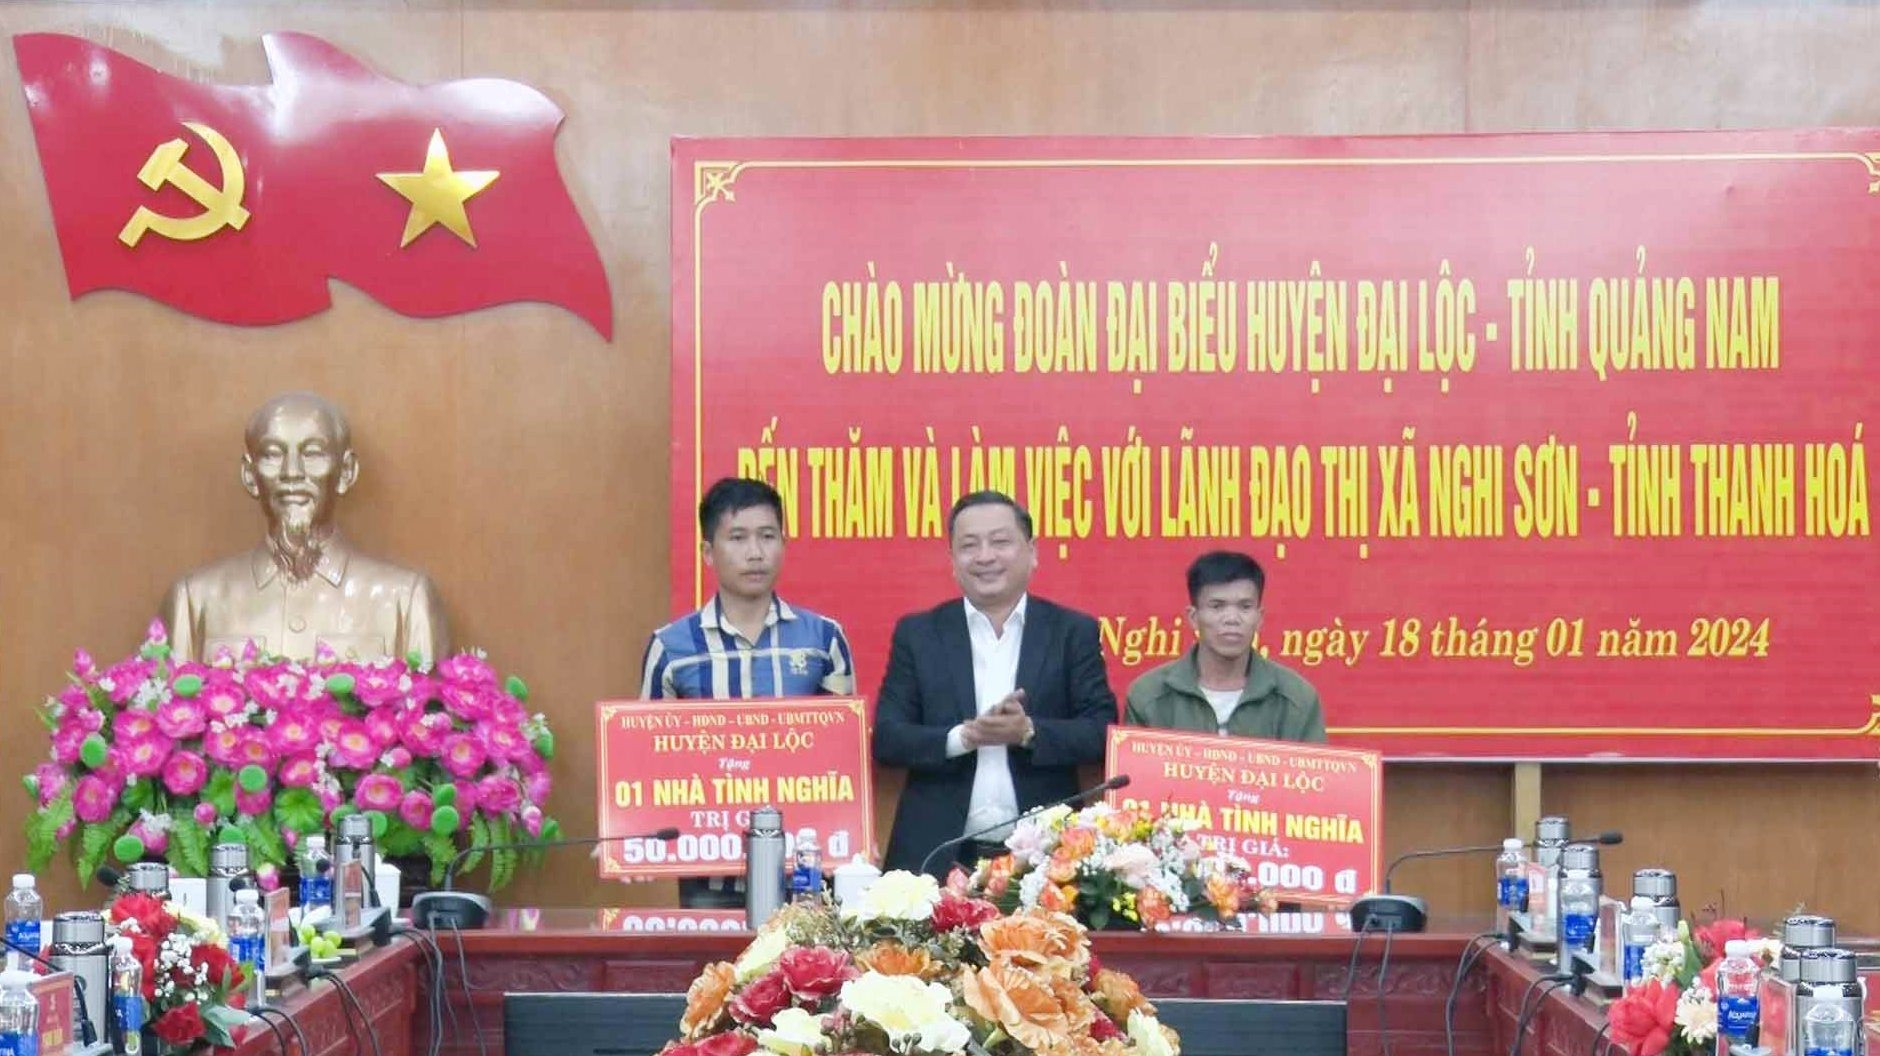 Đồng chí Nguyễn Hảo, Bí thư Huyện ủy Đại Lộc trao kinh phí hỗ trợ xây dựng 2 nhà tình nghĩa cho 2 gia đình có hoàn cảnh khó khăn tại thị xã Nghi Sơn.